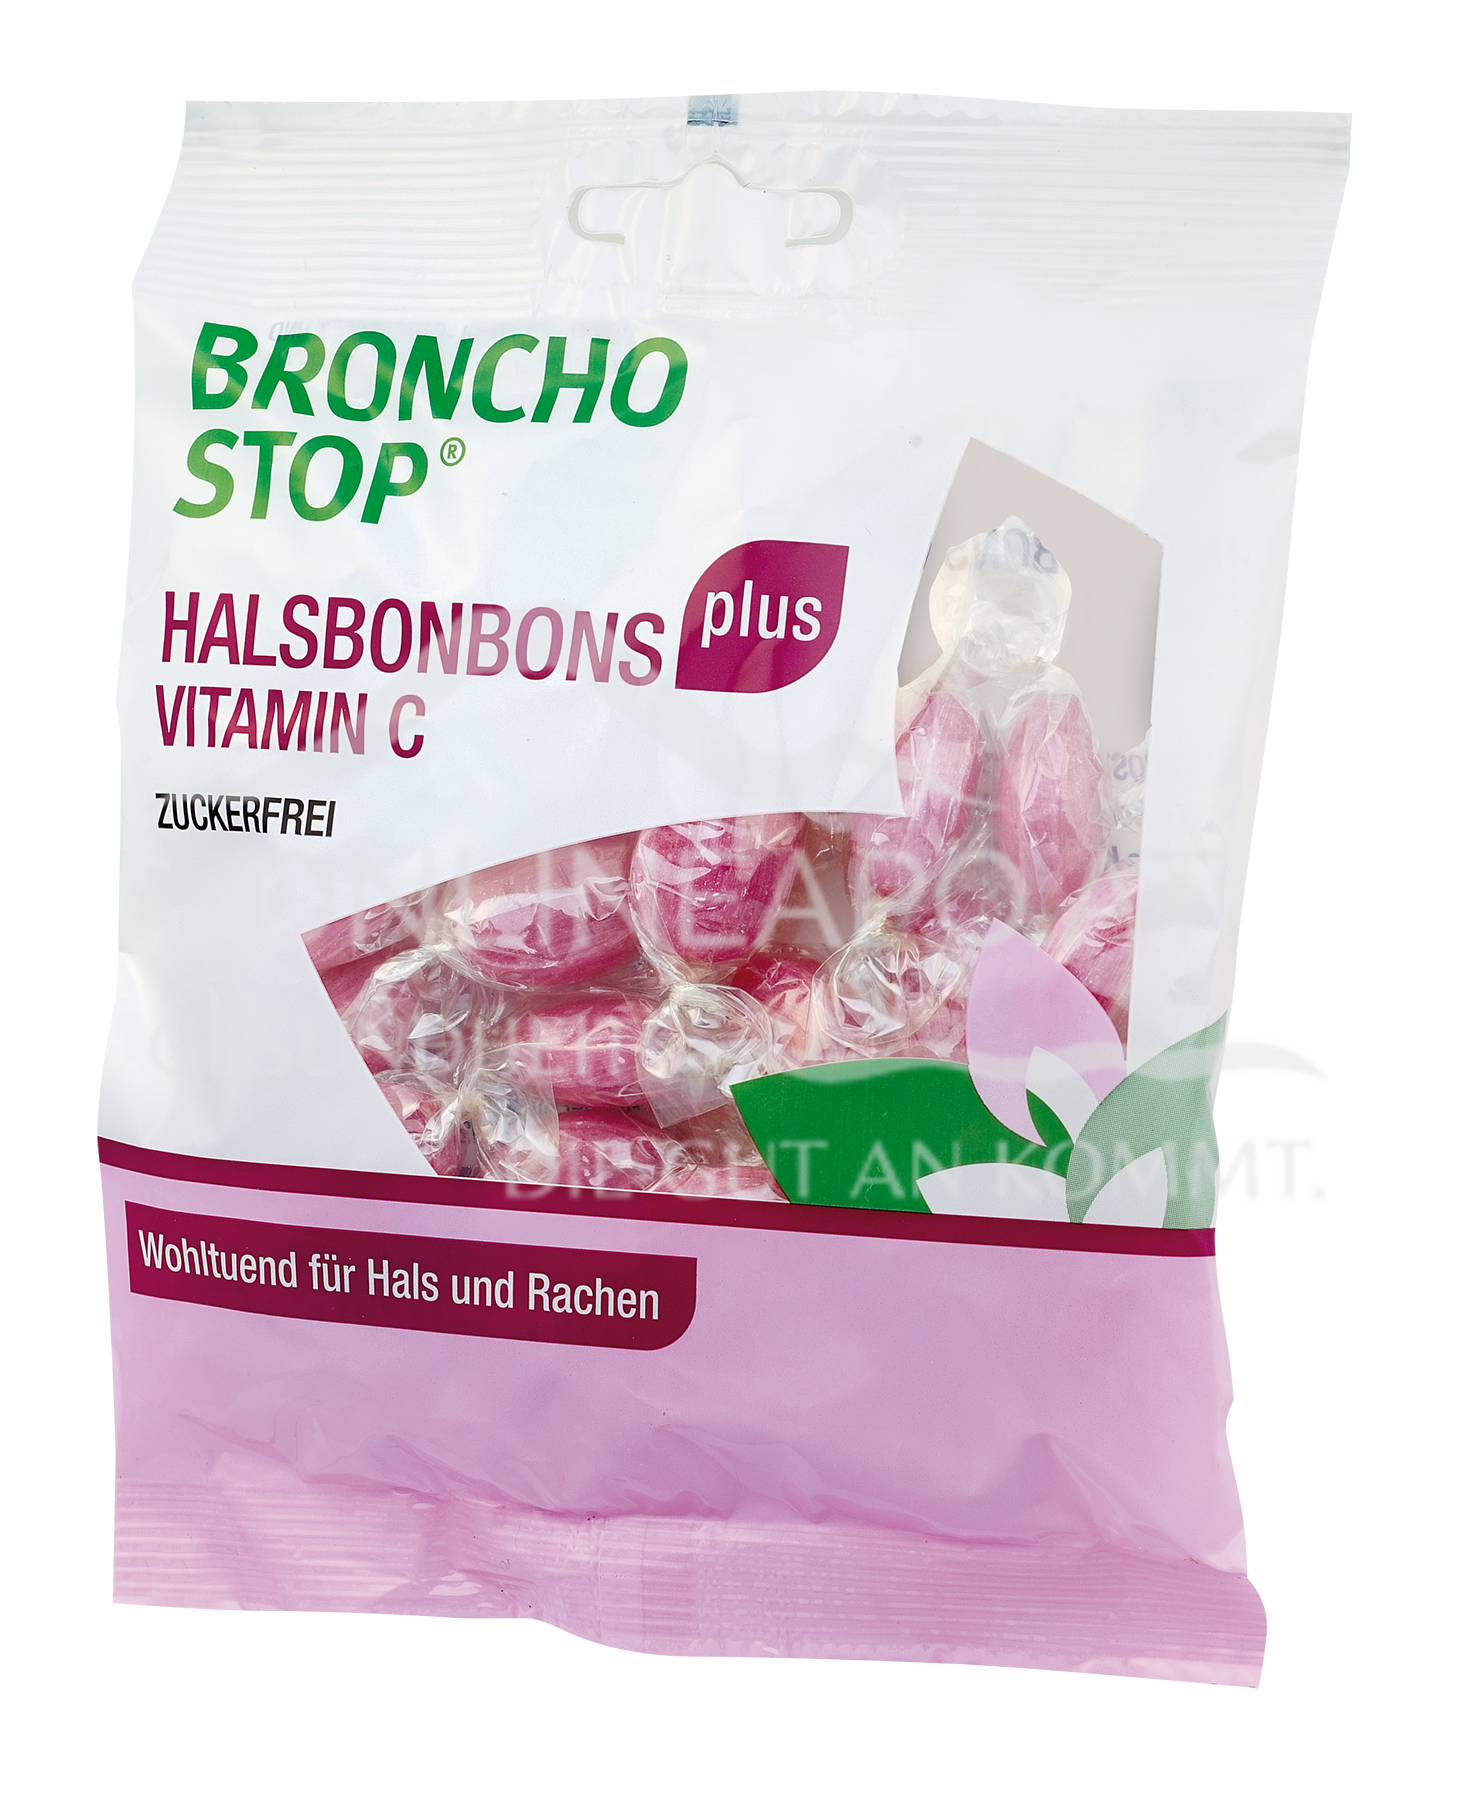 BRONCHOSTOP® plus Halsbonbons